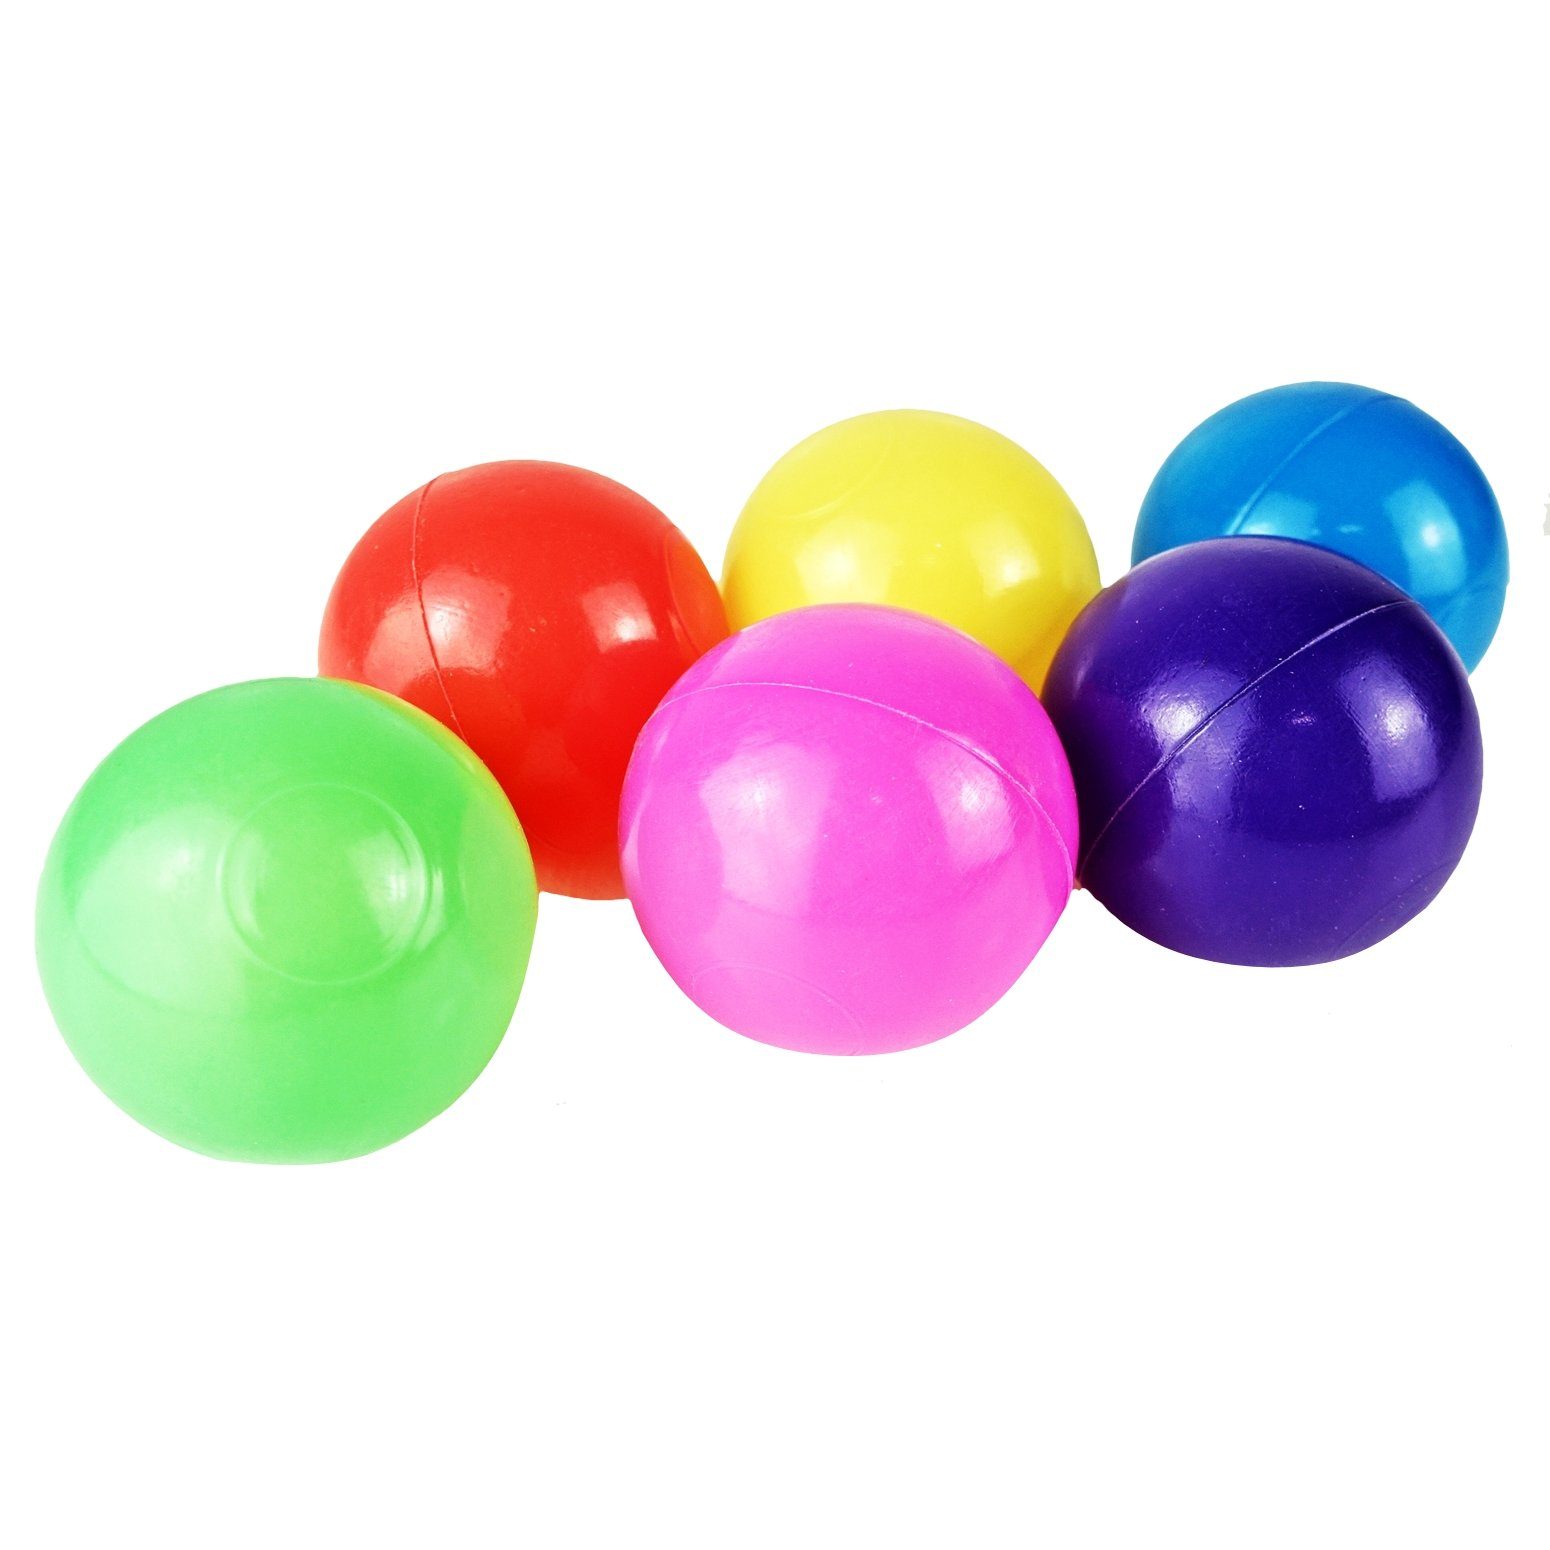 - Ø - Ball Bällebad Farben Bälle Bällebad-Bälle bunte 5,5cm 900 BAYLI Softball Mischung